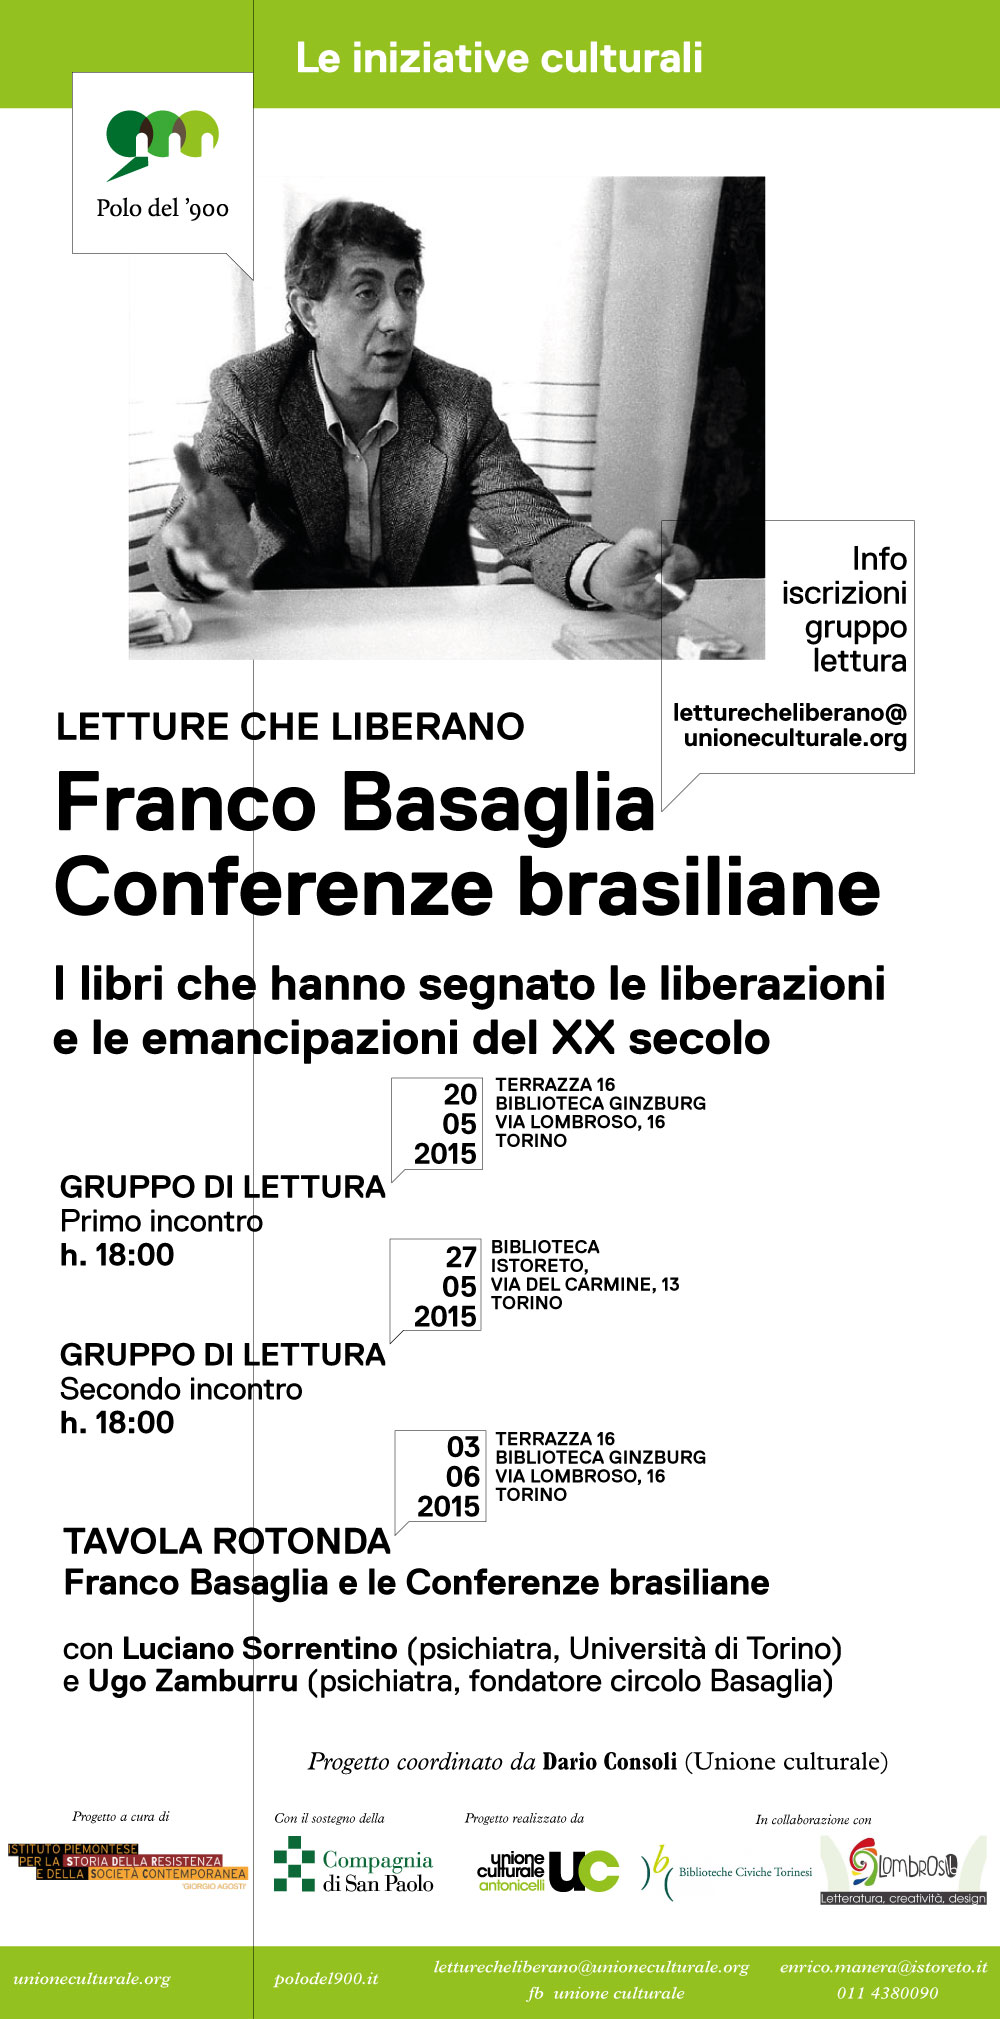 02-06_Polo_del_900-Liberazioni-locandina_420x208mm(4)